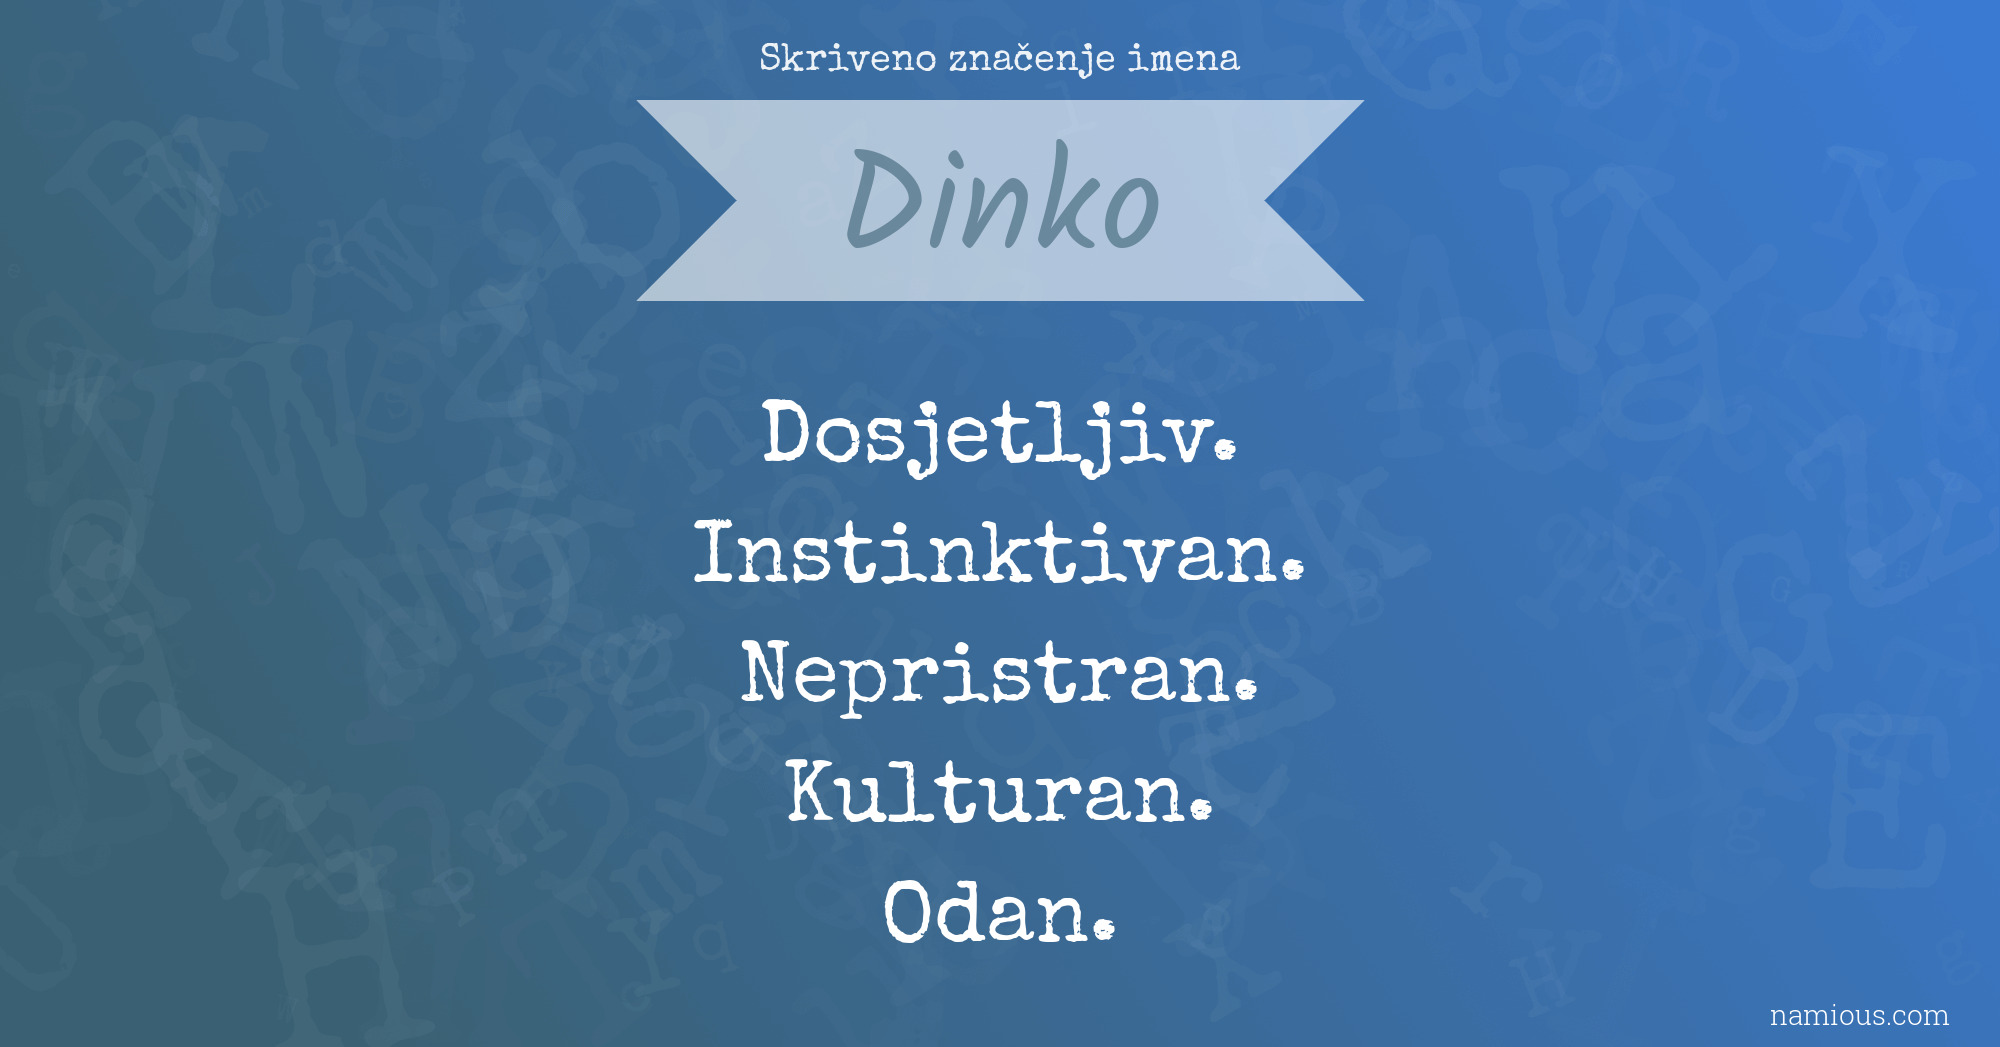 Skriveno značenje imena Dinko